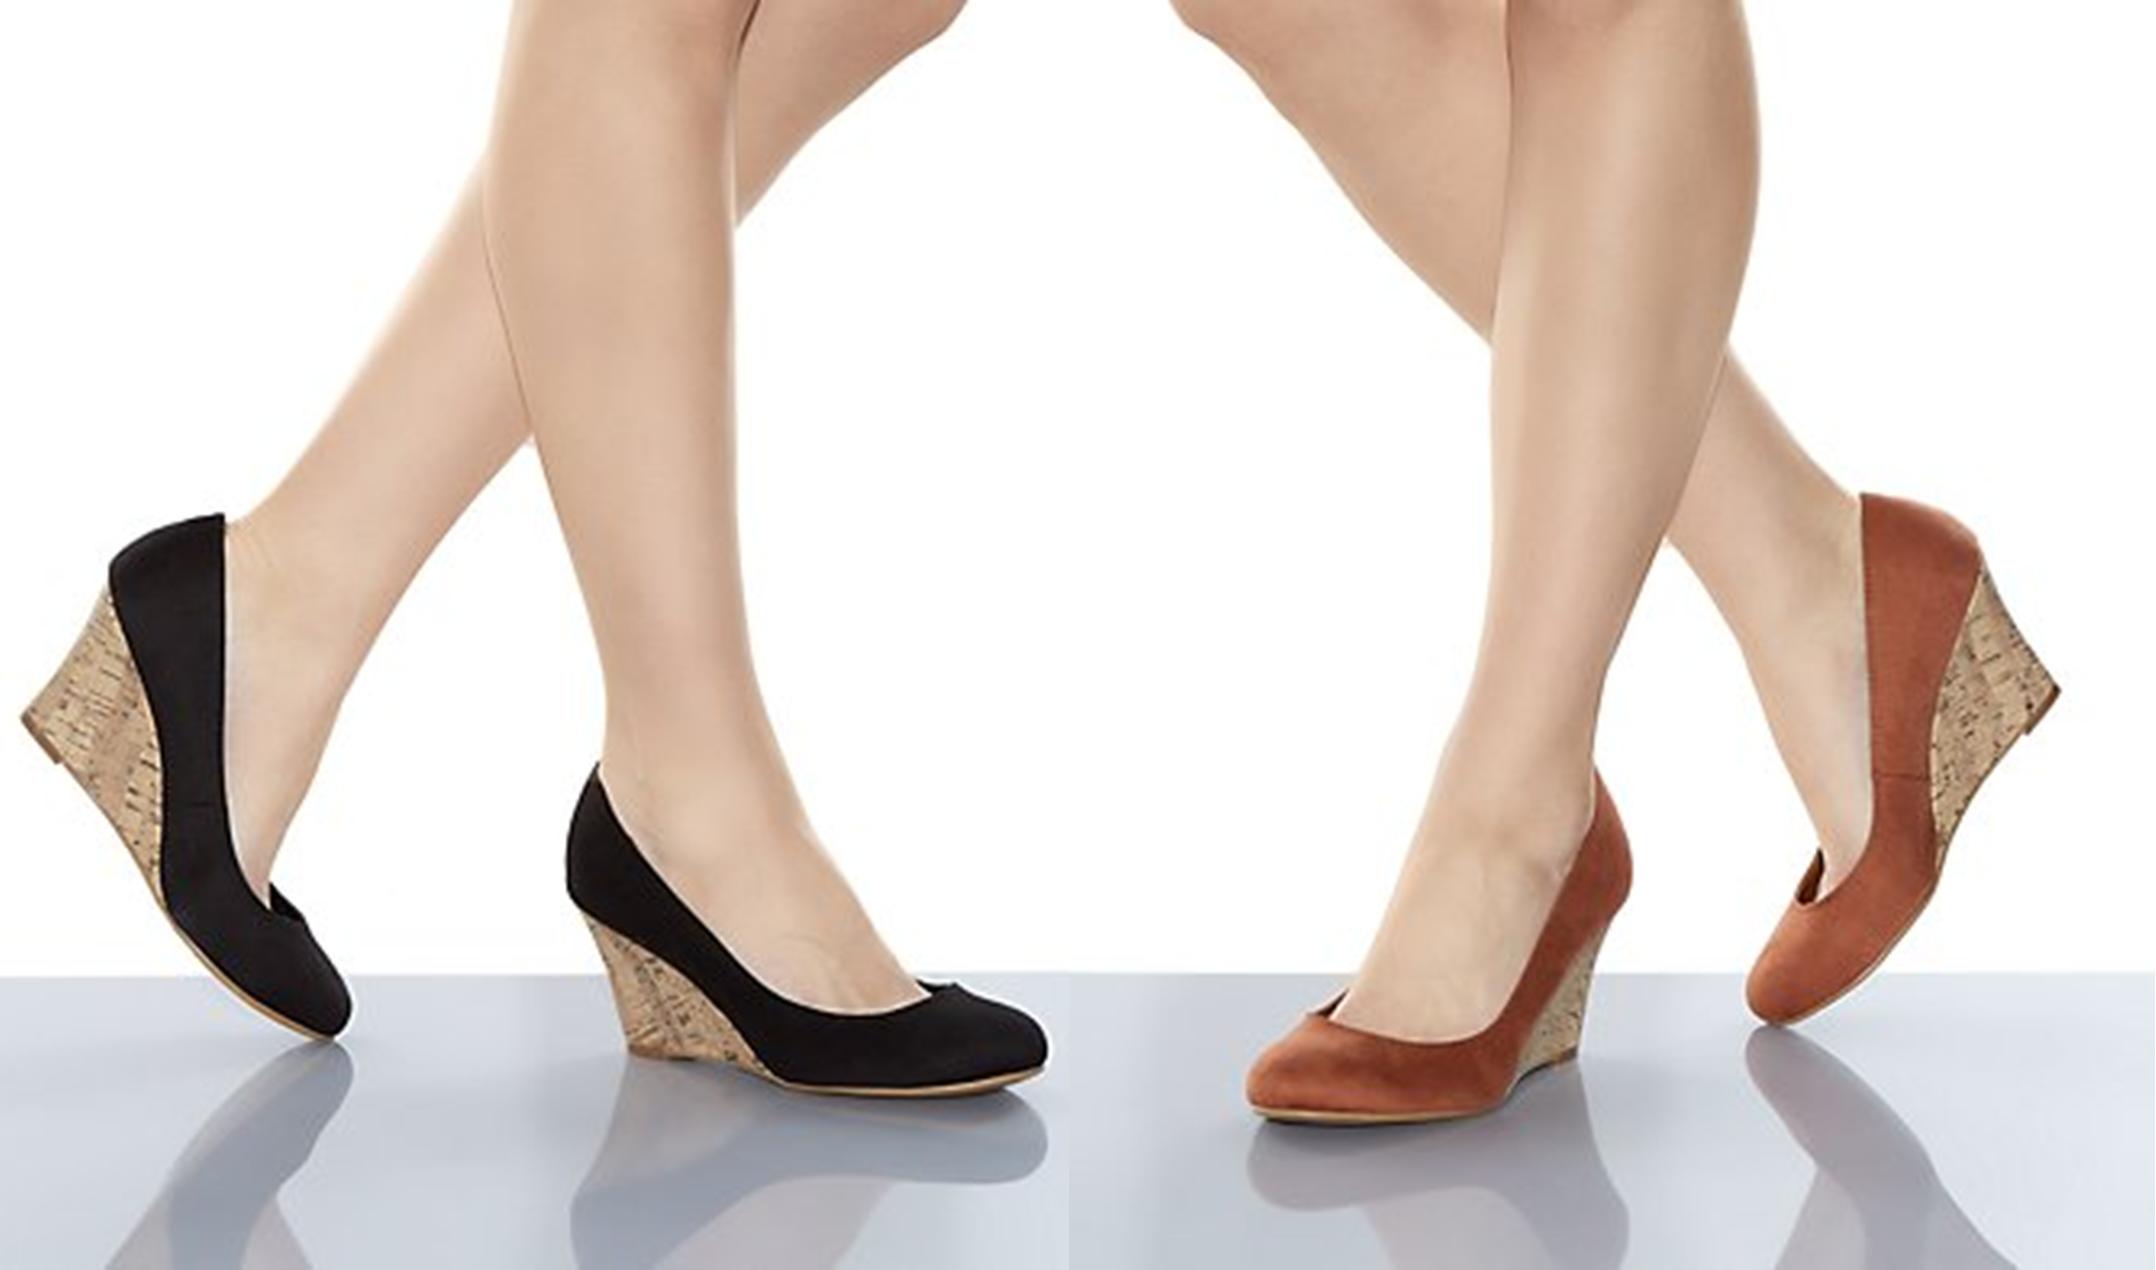 b.o.c. Women's Natasha Comfort Wedge Sandals - Macy's